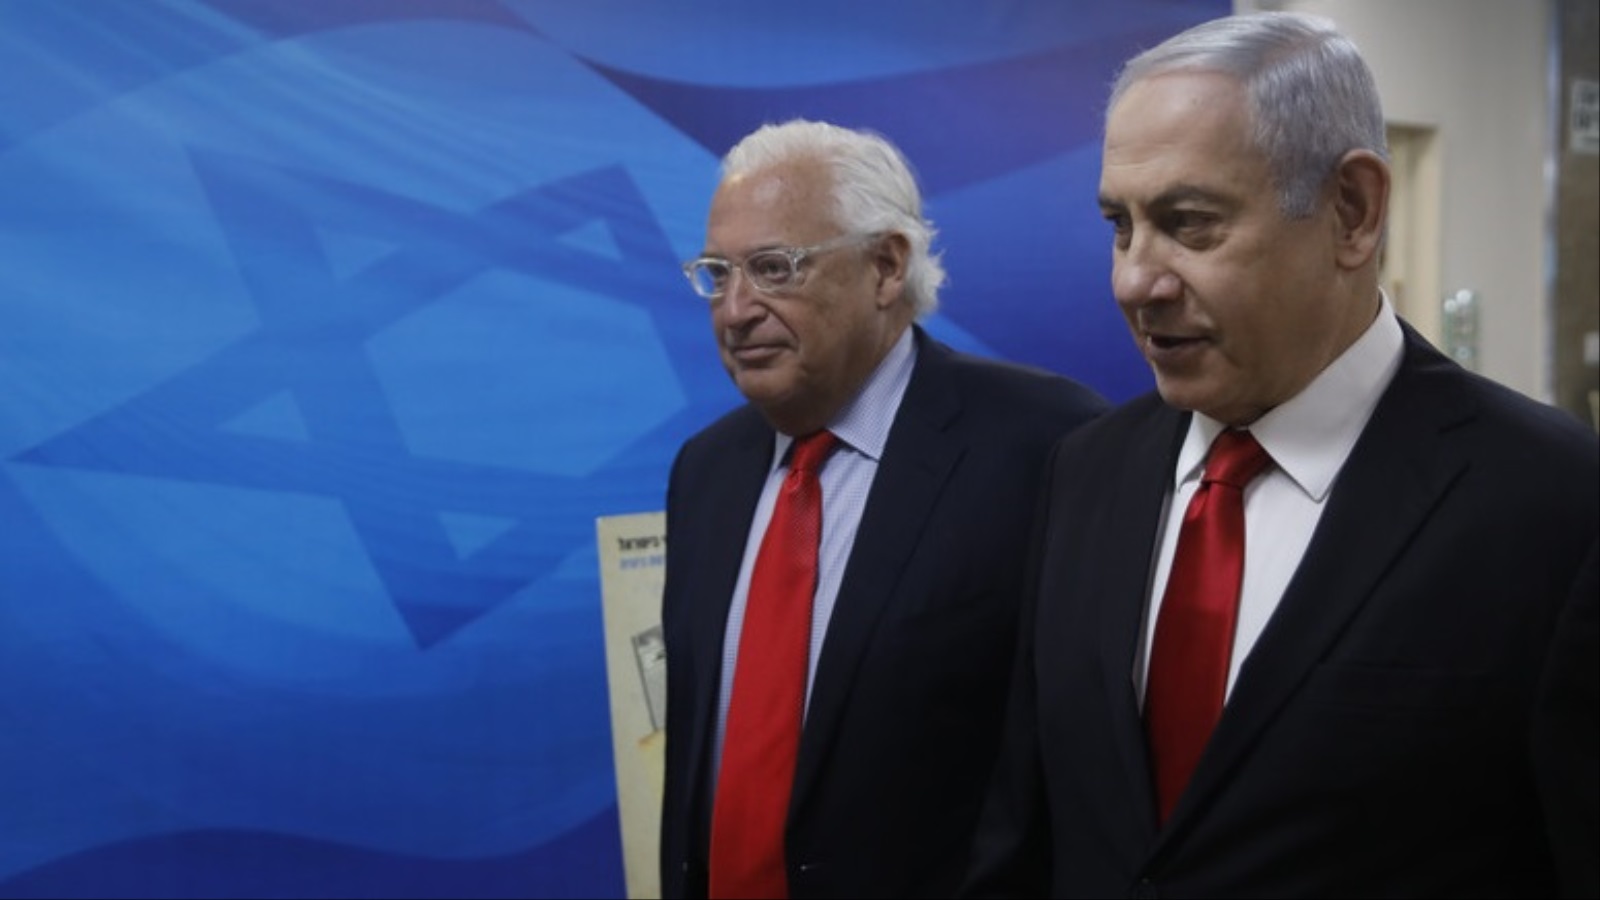 ‪نتنياهو مع السفير الأميركي فريدمان الداعم بشدة لموقف إسرائيل‬ (الأوروبية)